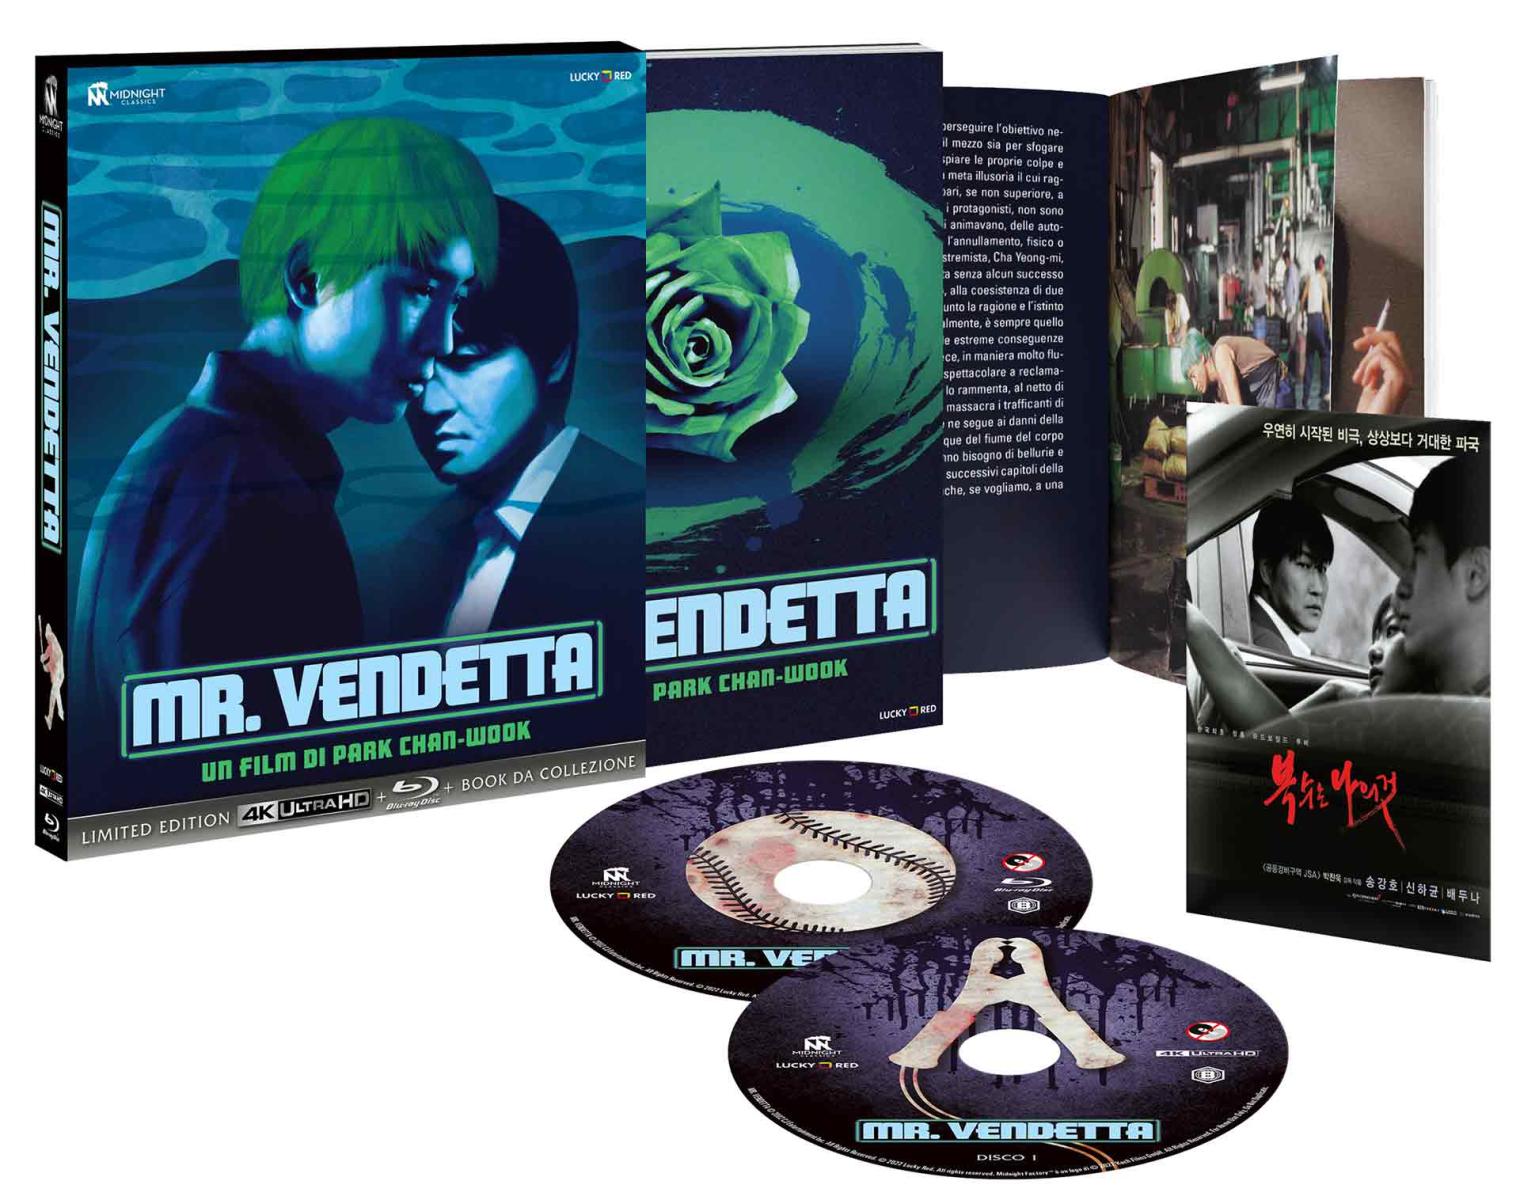 Mr. Vendetta - Limited Edition Blu-ray 4K UHD + Blu-ray + Book da Collezione (Blu-ray) Image 4